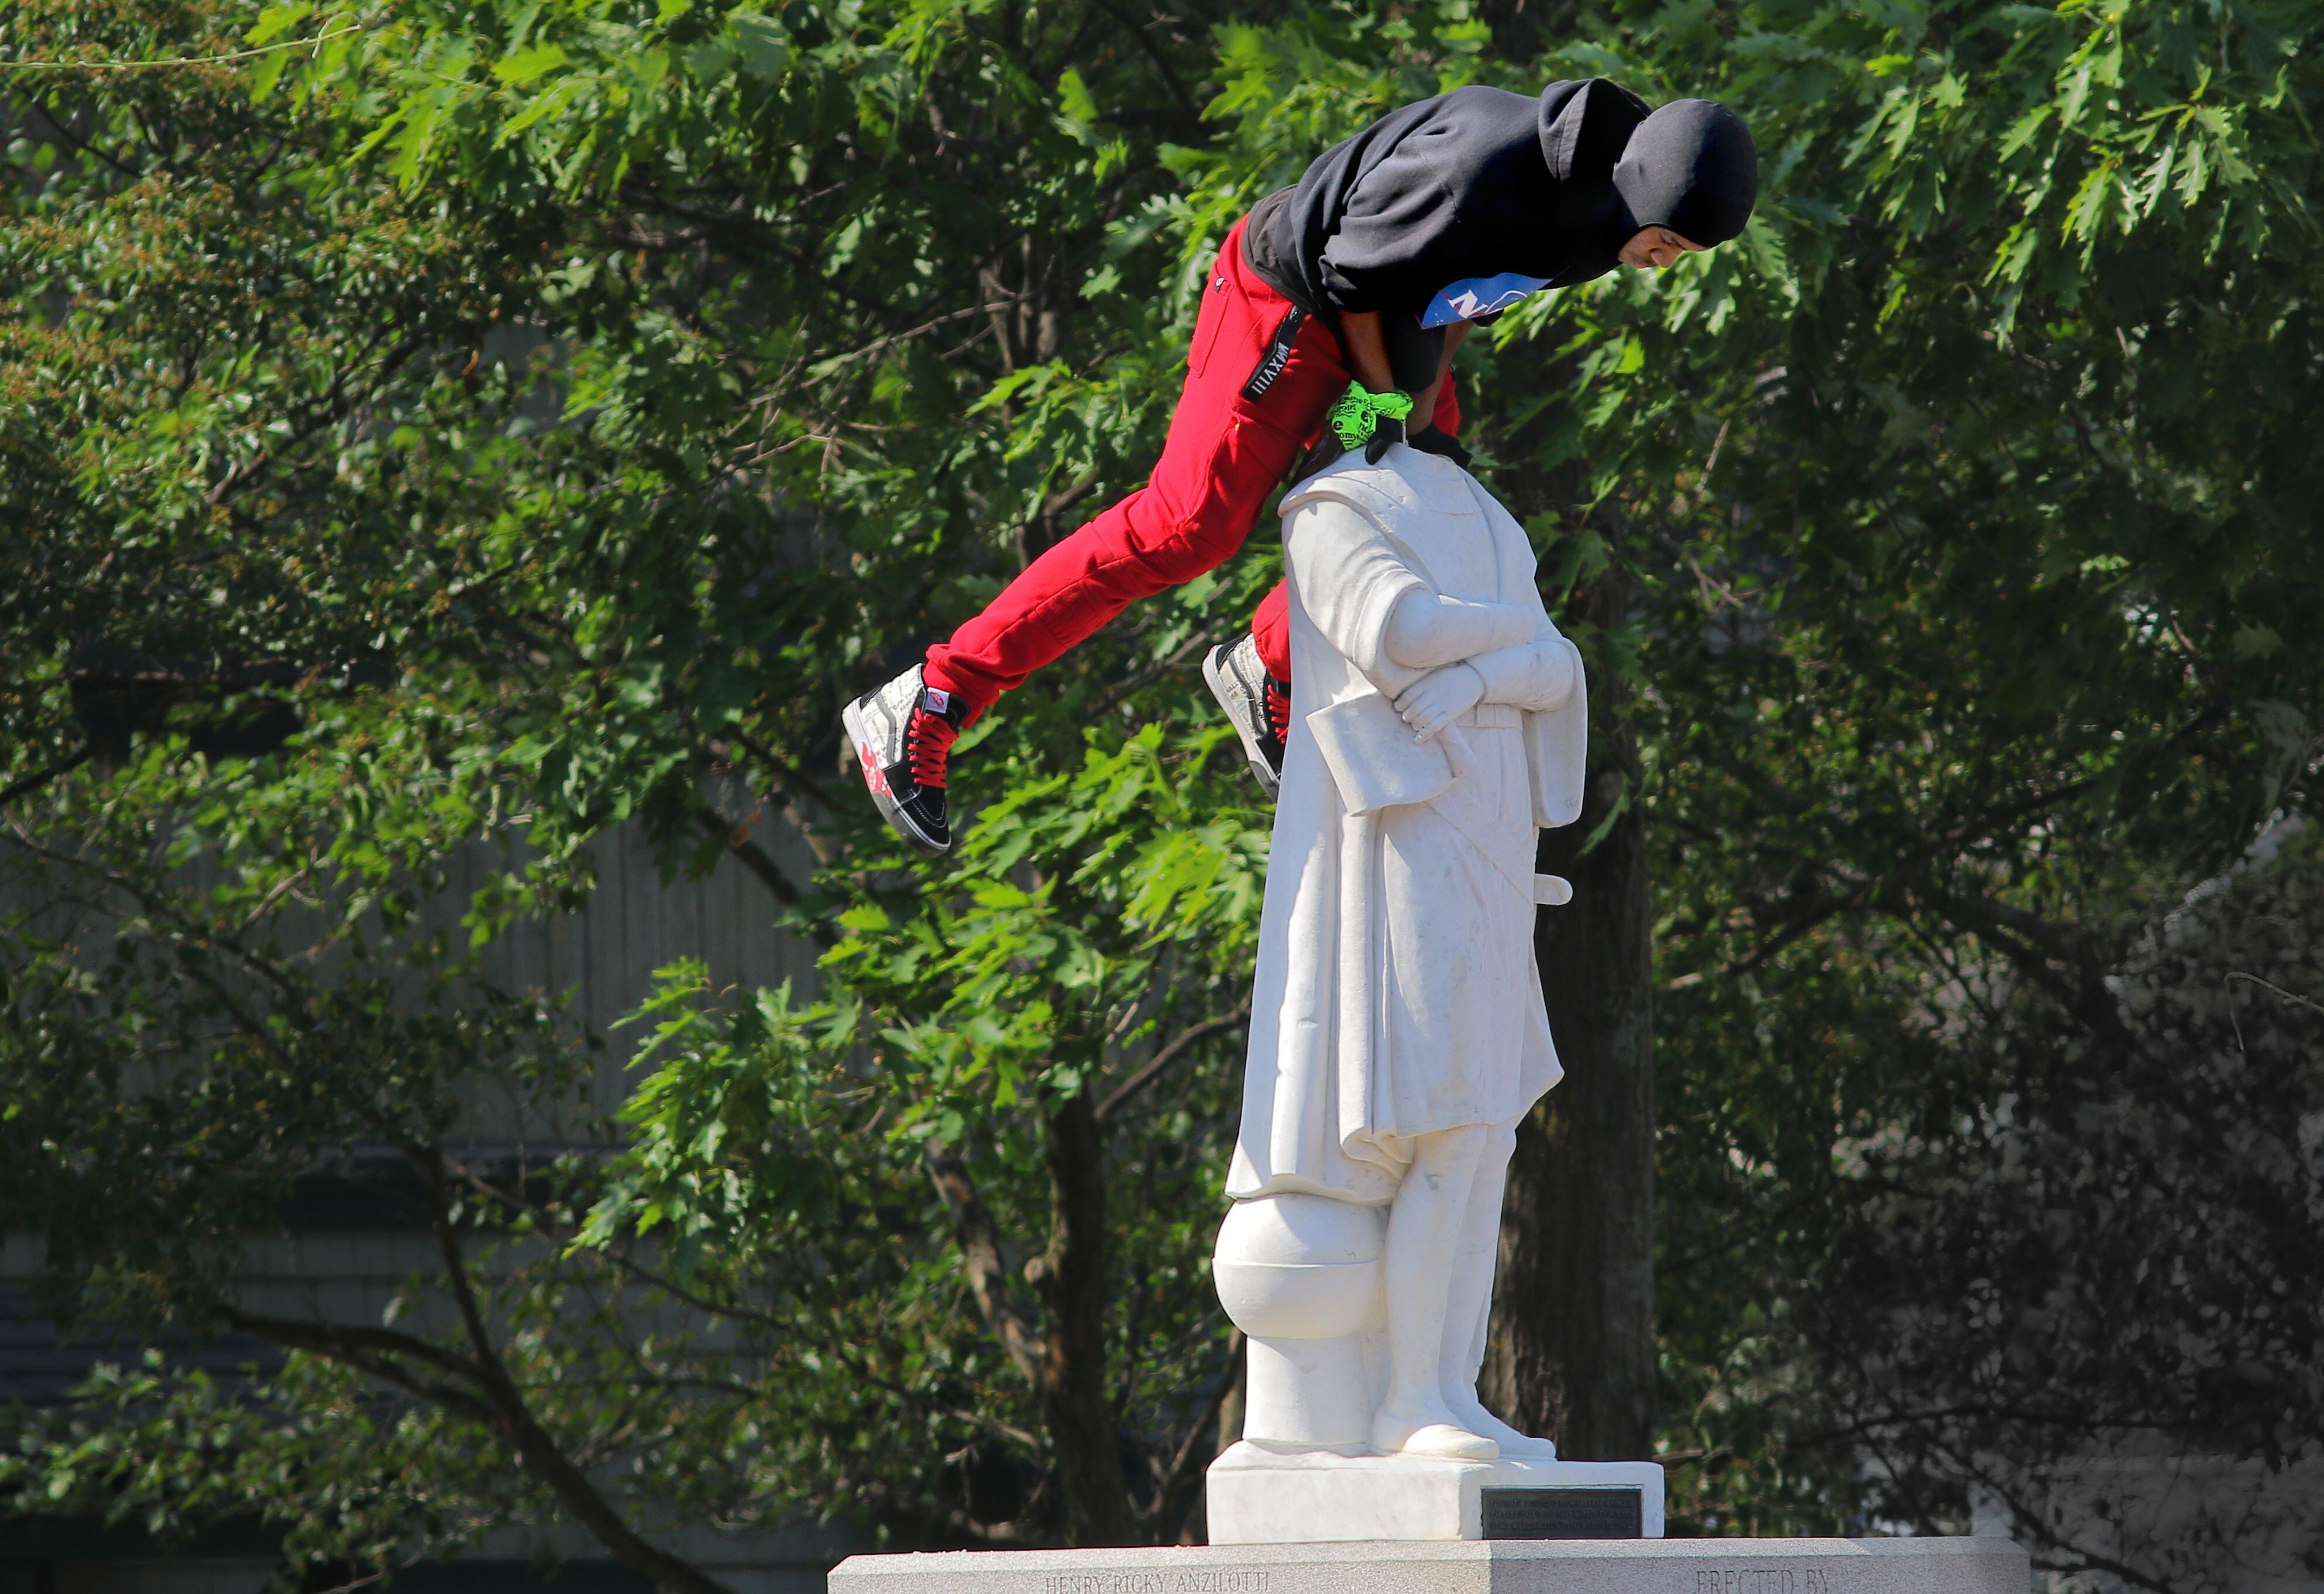 La estatua de Cristóbal Colón en el Parque Cristóbal Colón de Boston fue destrozada por los manifestantes que le quitaron la cabeza el día 10 de junio de 2020.